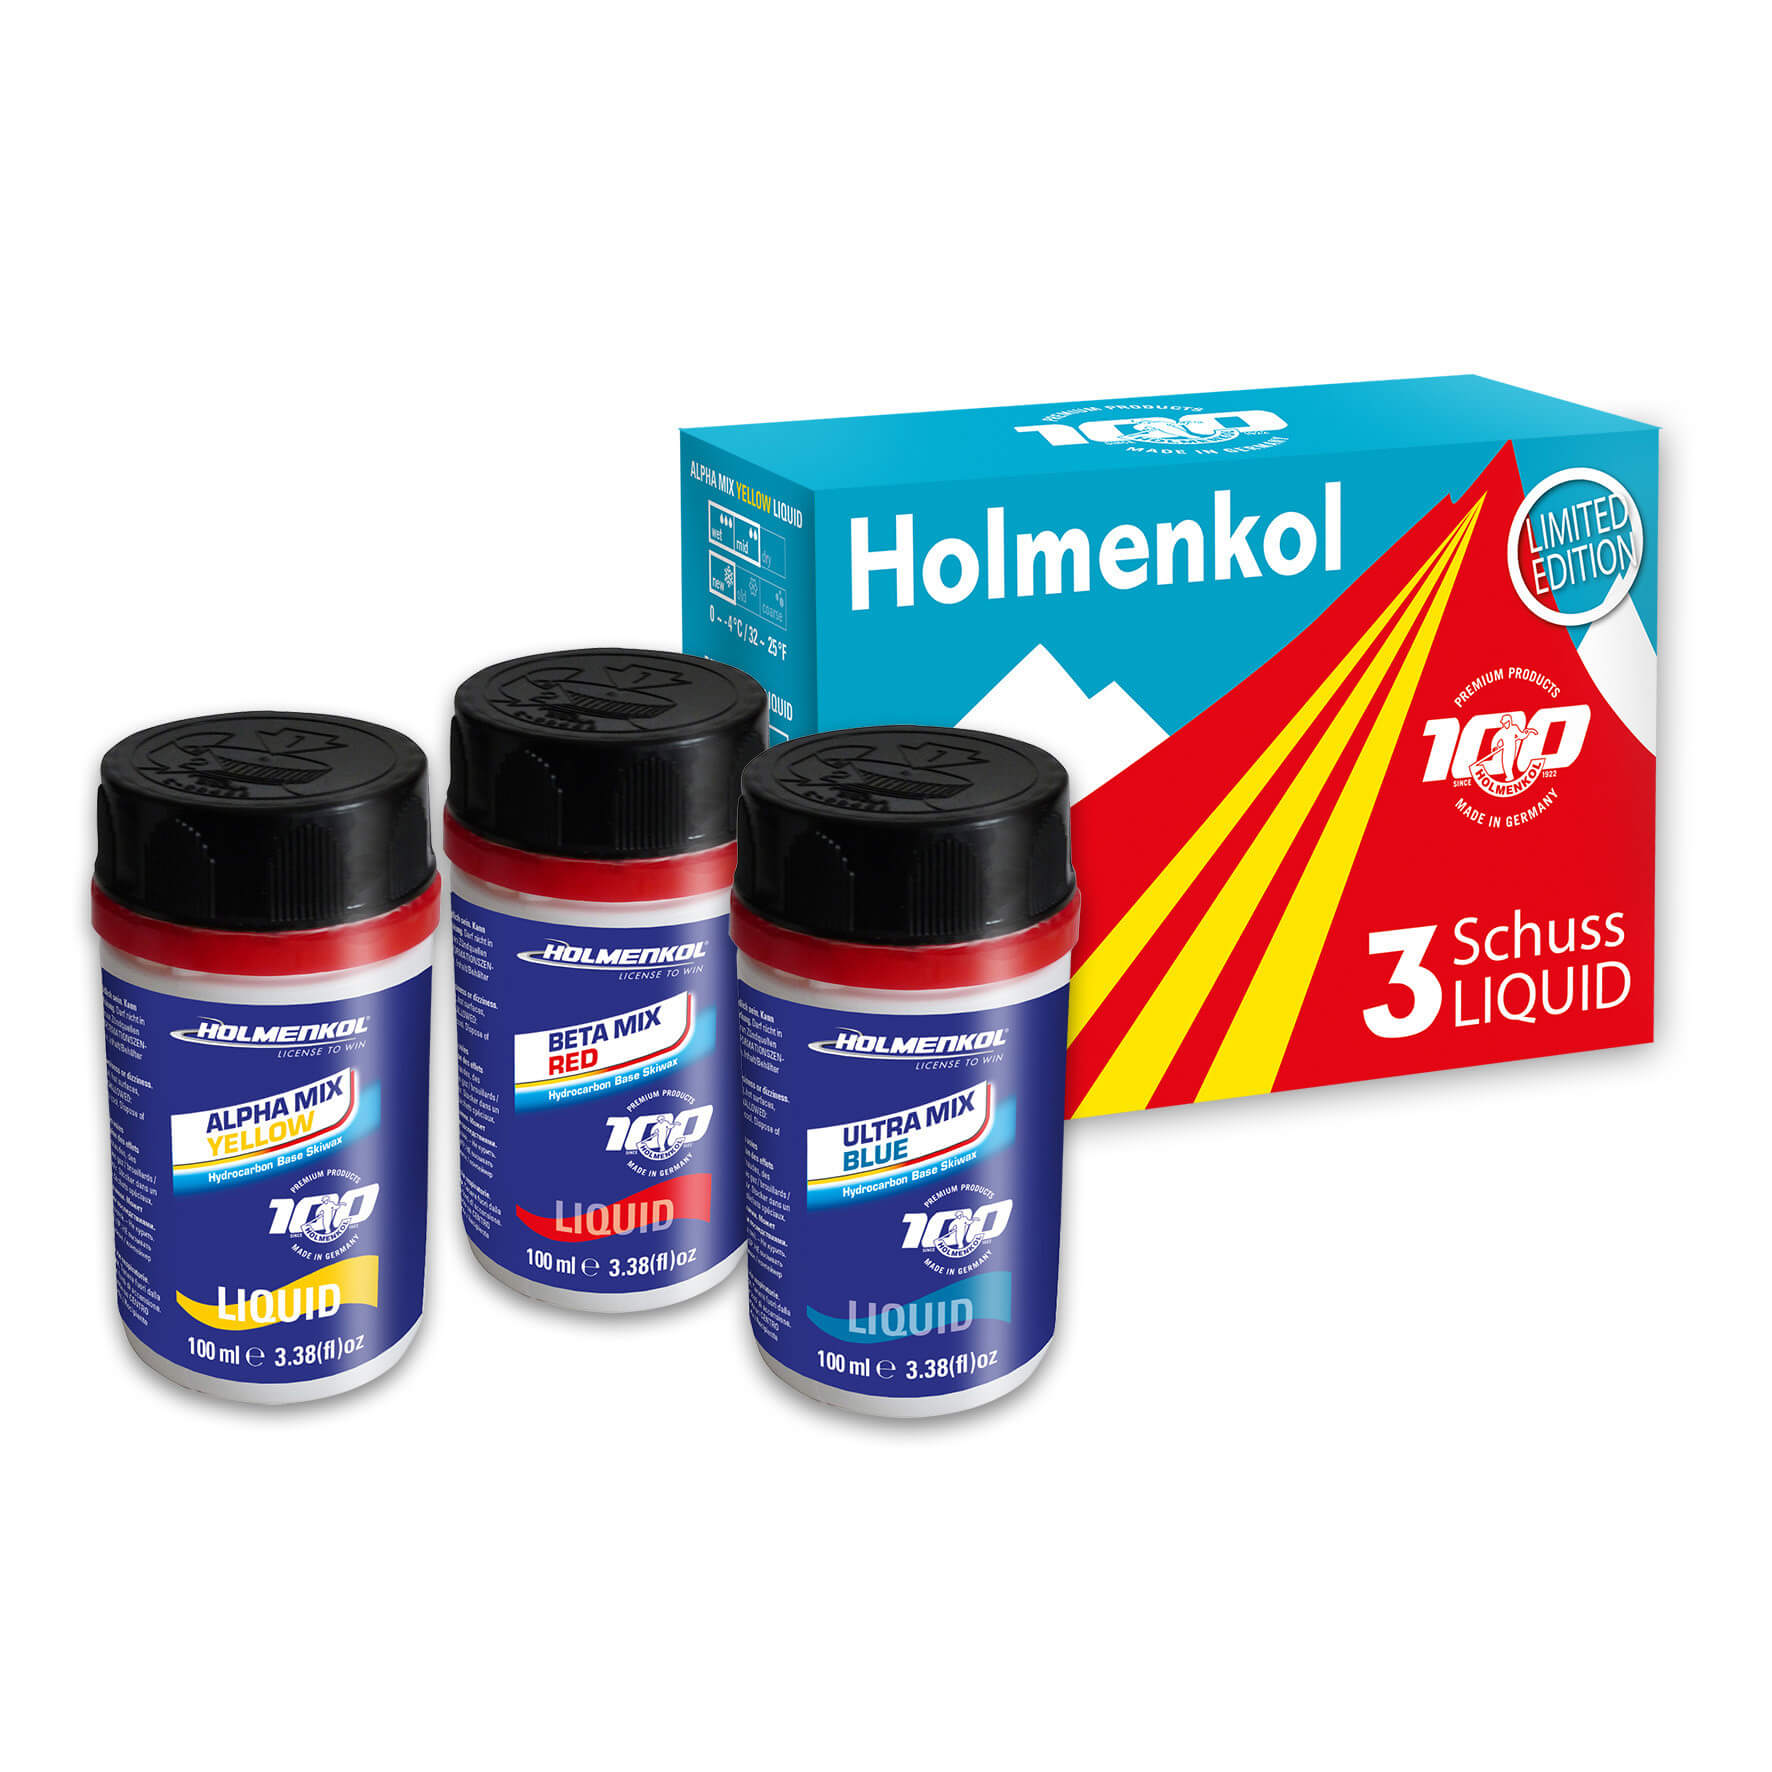 Holmenkol Liquid Glide Wax Kit